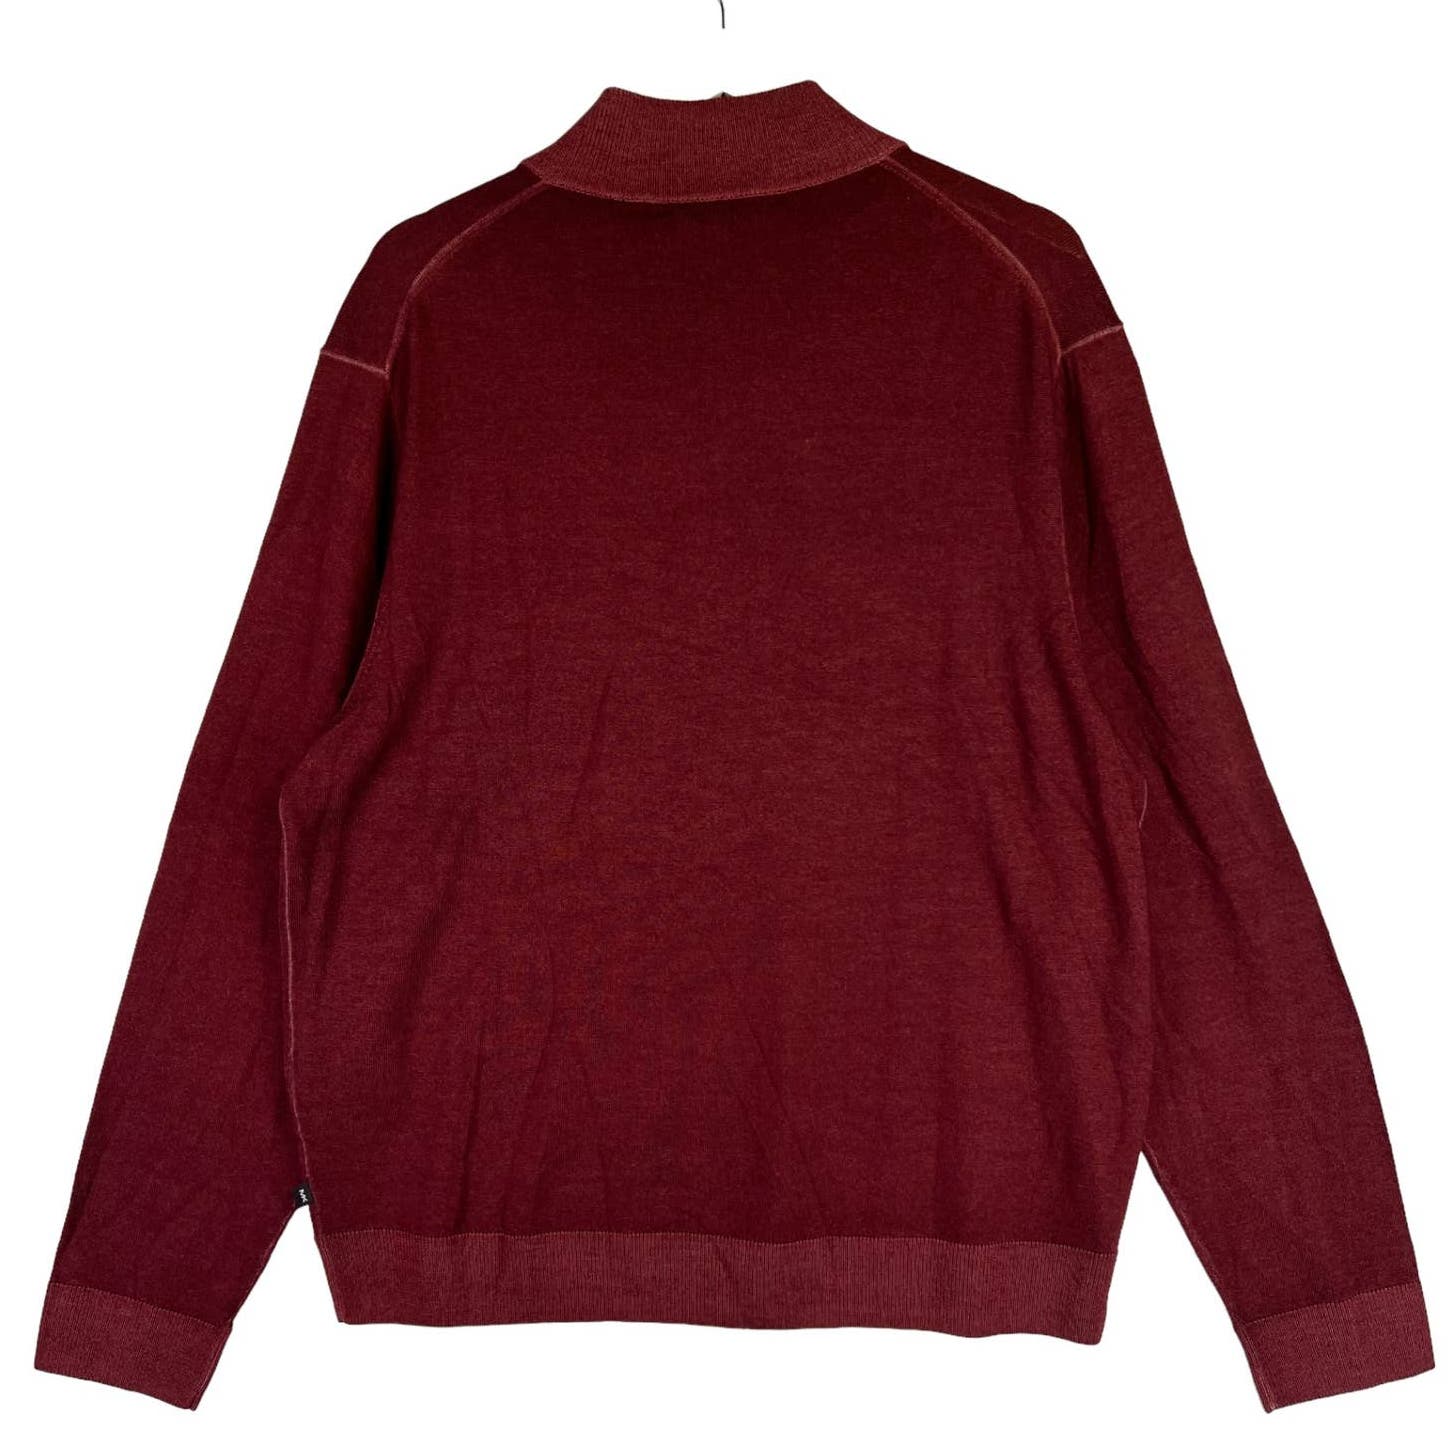 Michael Kors Men Burgundy Sweatshirt US XXL Merino Wool Sweater